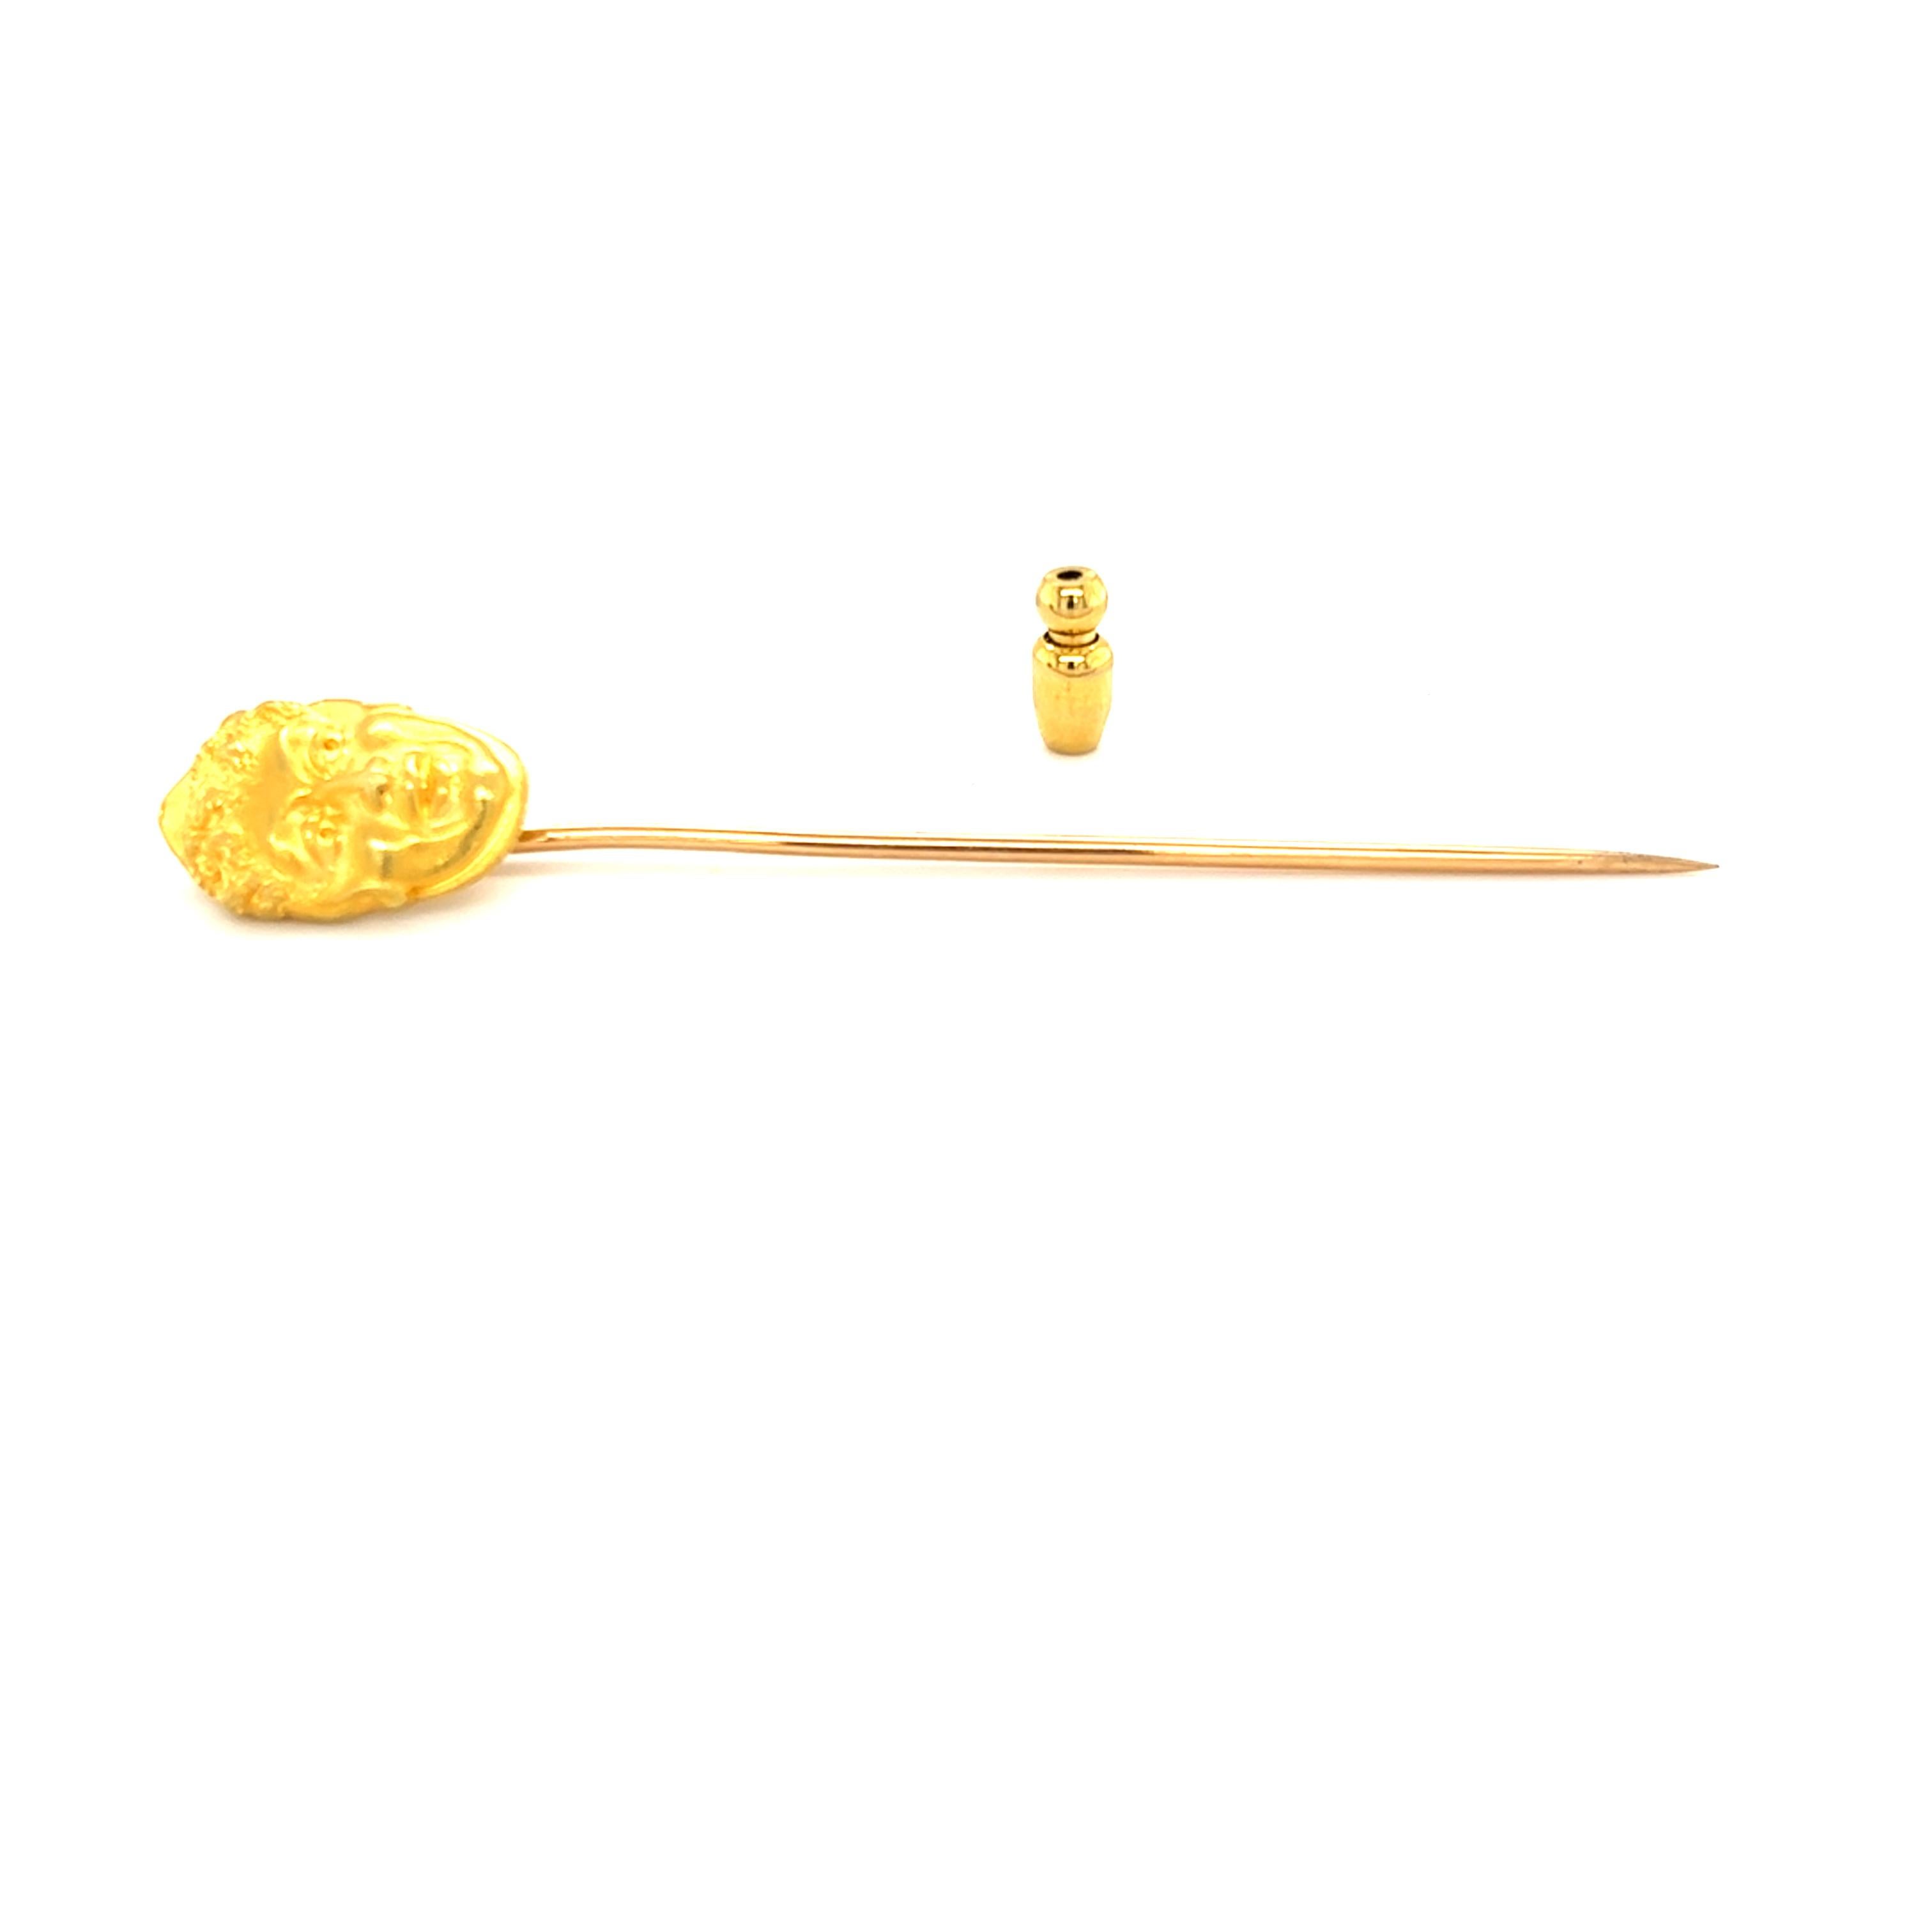 Antique French Art Nouveau 18K Yellow Gold Plisson et Hartz Stick Pin 2